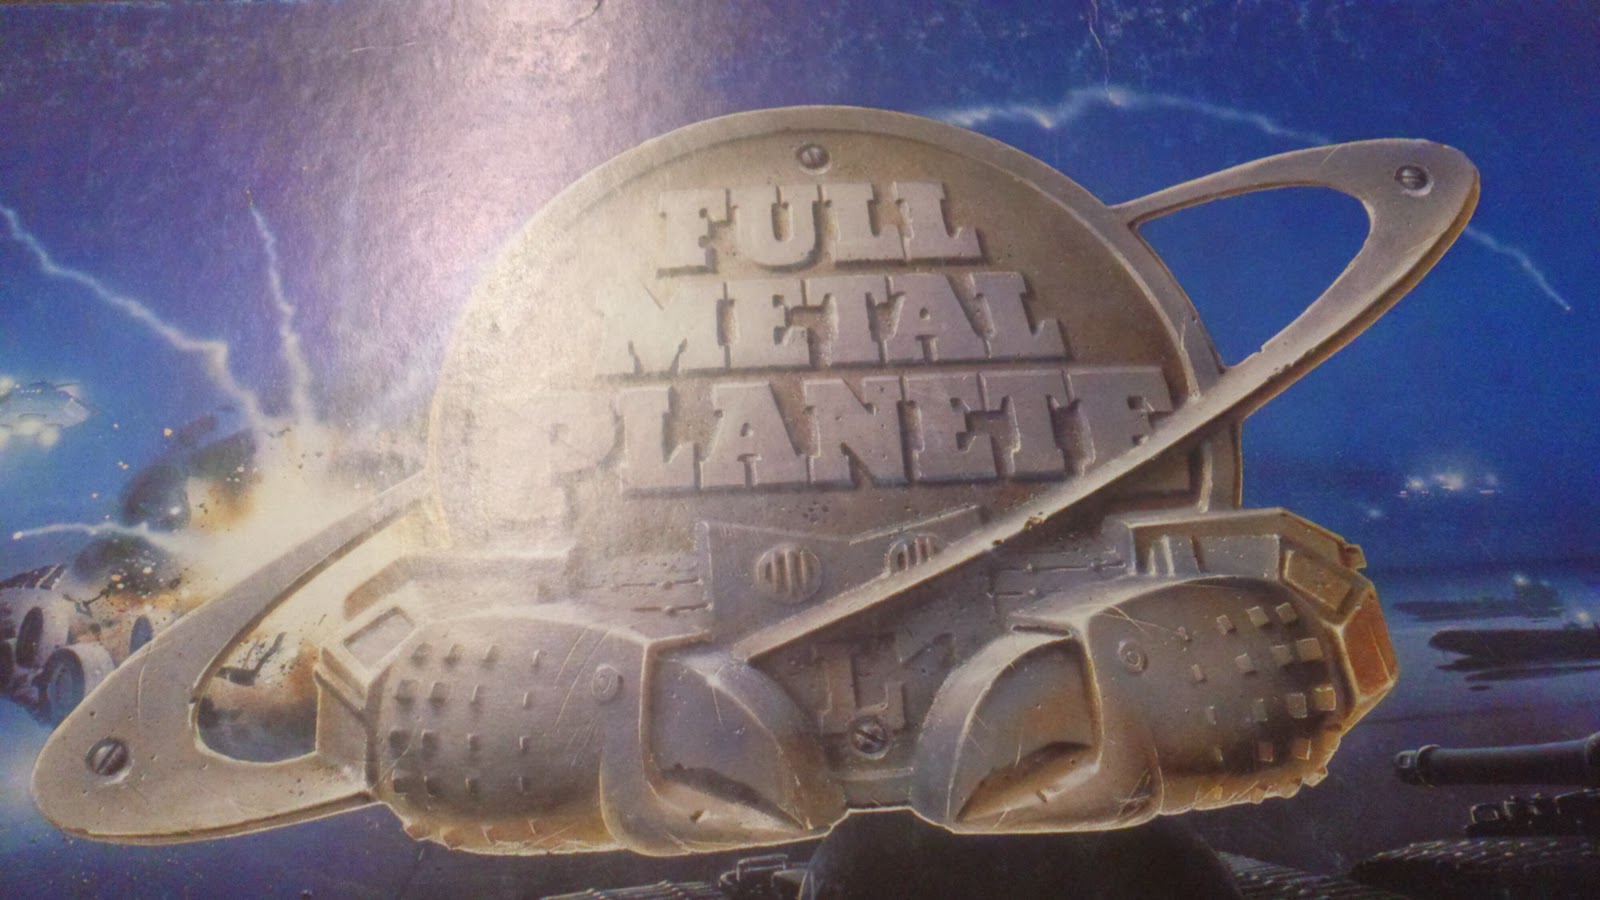 Full metal planet manual high school